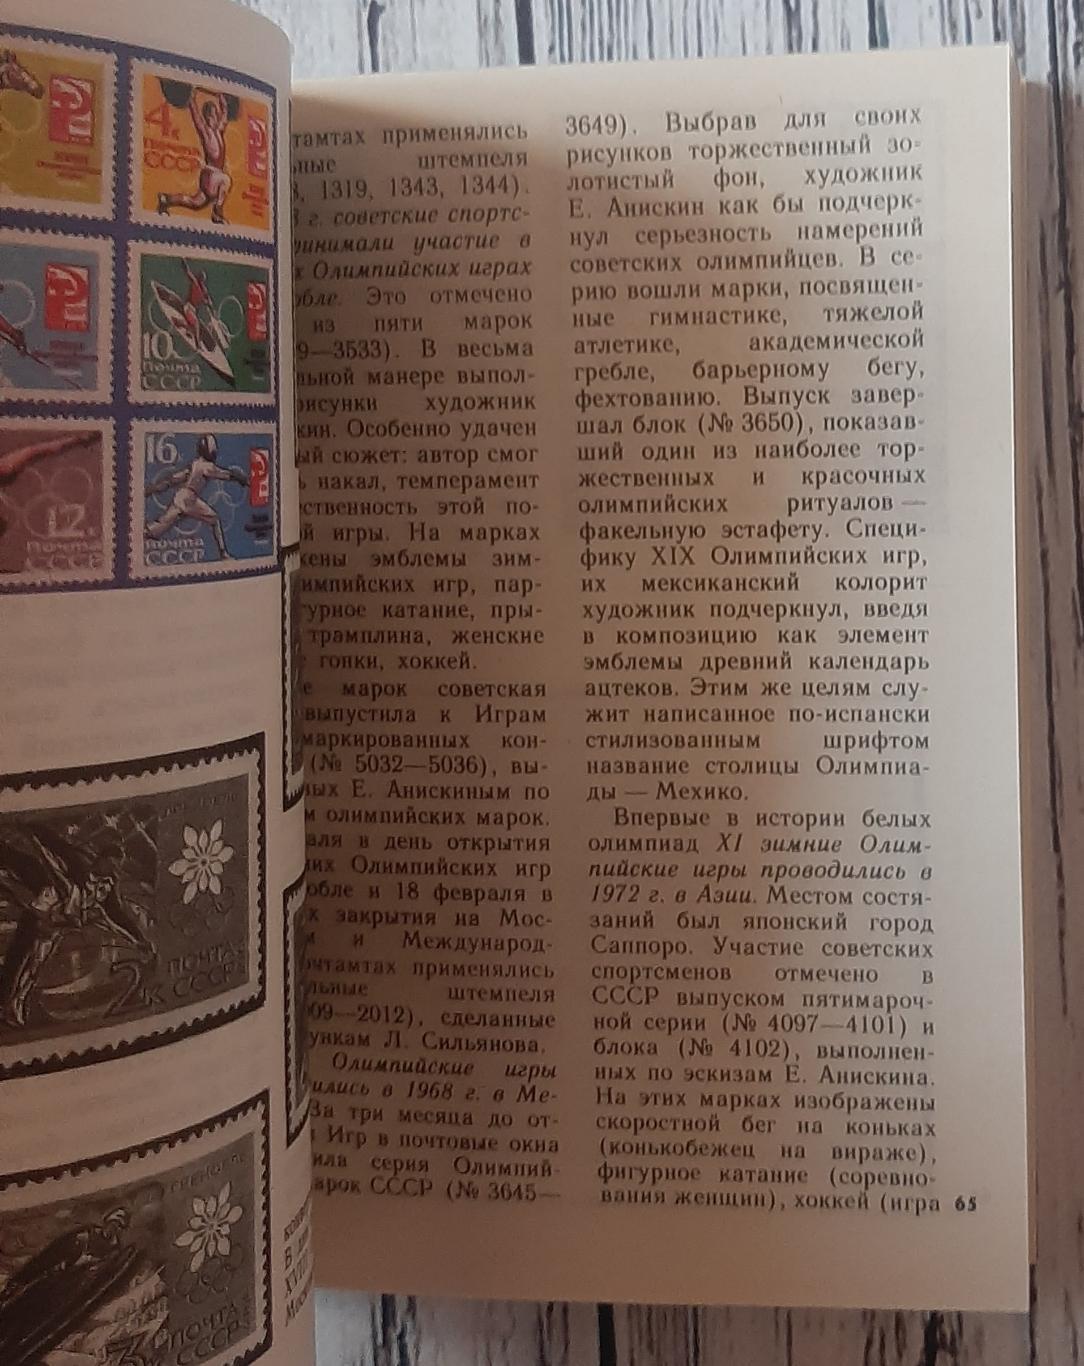 Левин - Филателистическая летопись советского спорта /1979/ 2